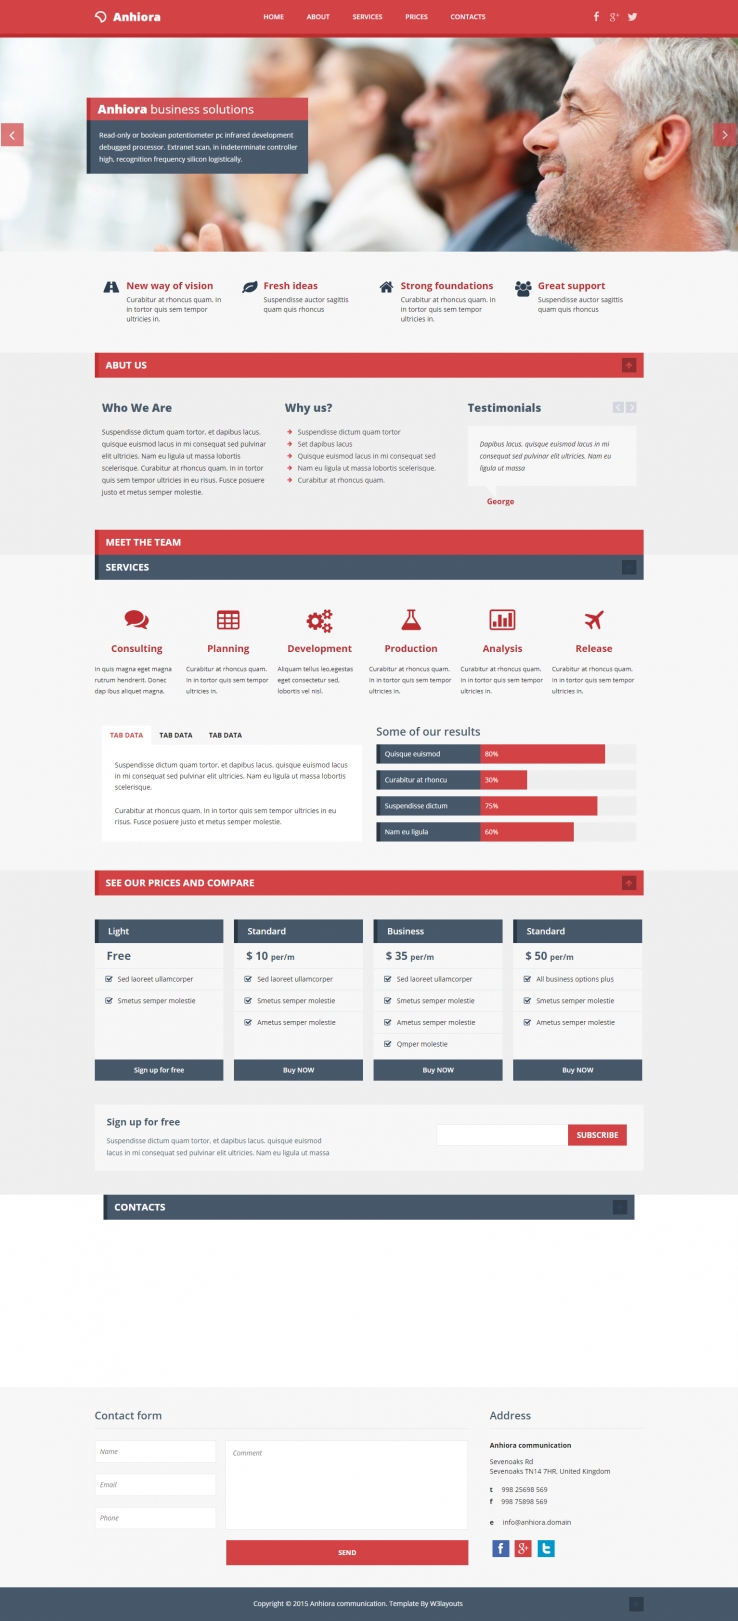 红色简洁风格的商务企业网站模板下载